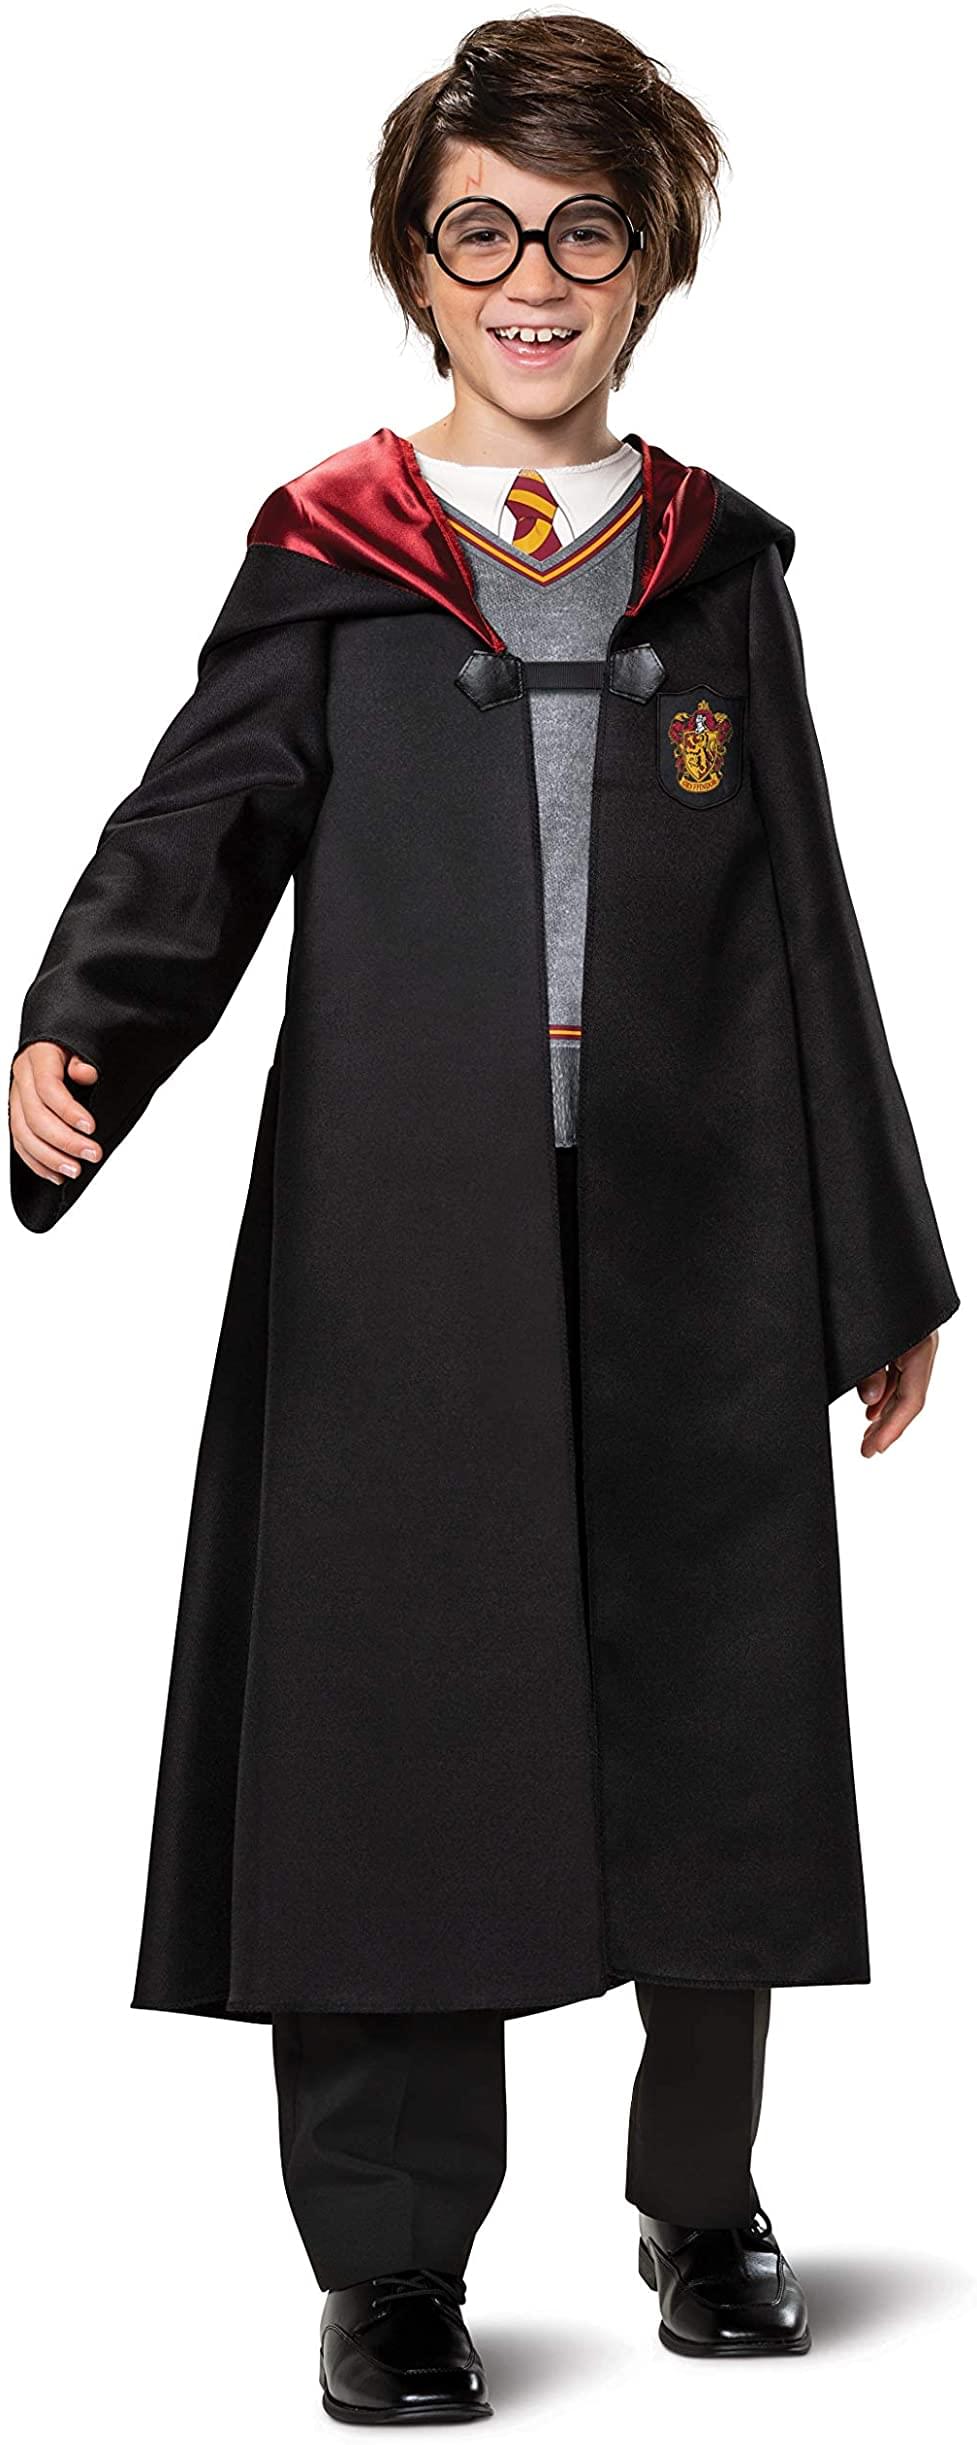 Photos - Fancy Dress Harry Potter Classic Child Costume DGC-107519K-C